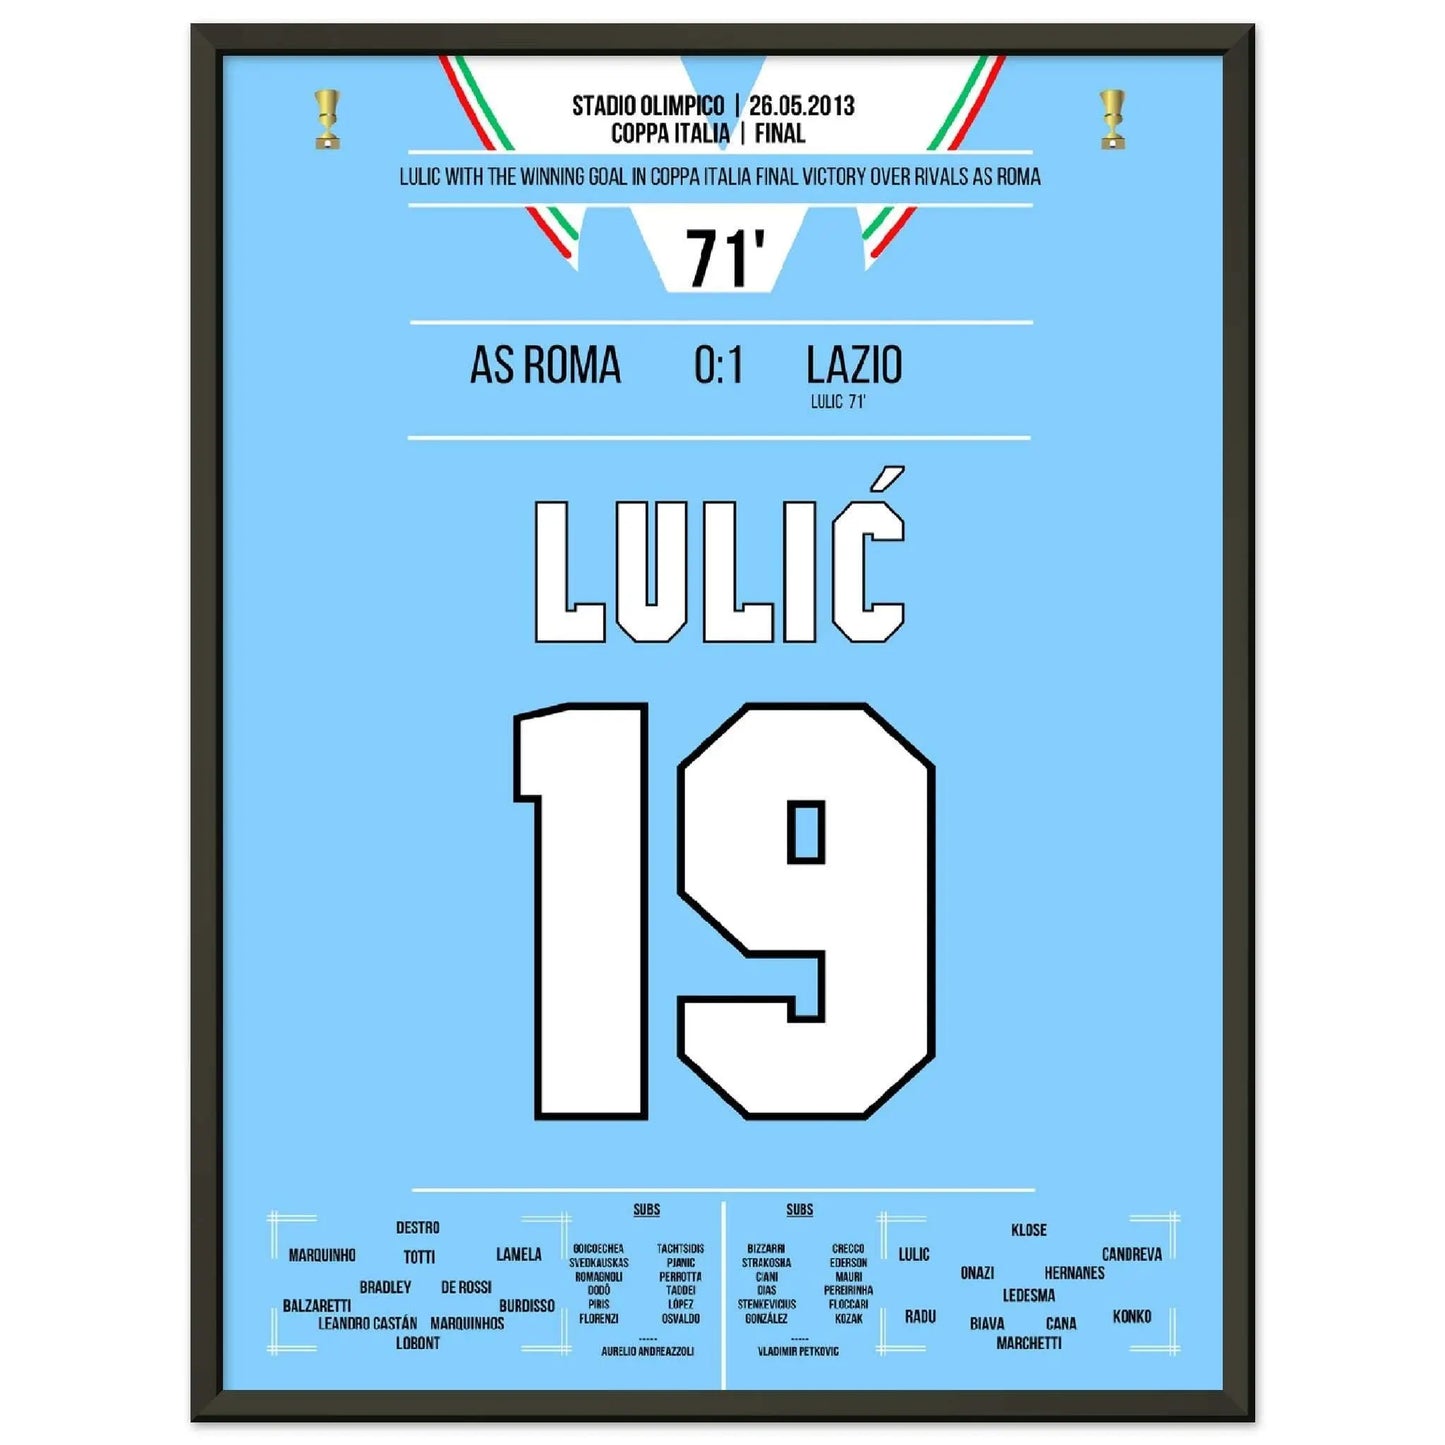 Lulic marque le but vainqueur de la finale de la Coppa Italia 2013